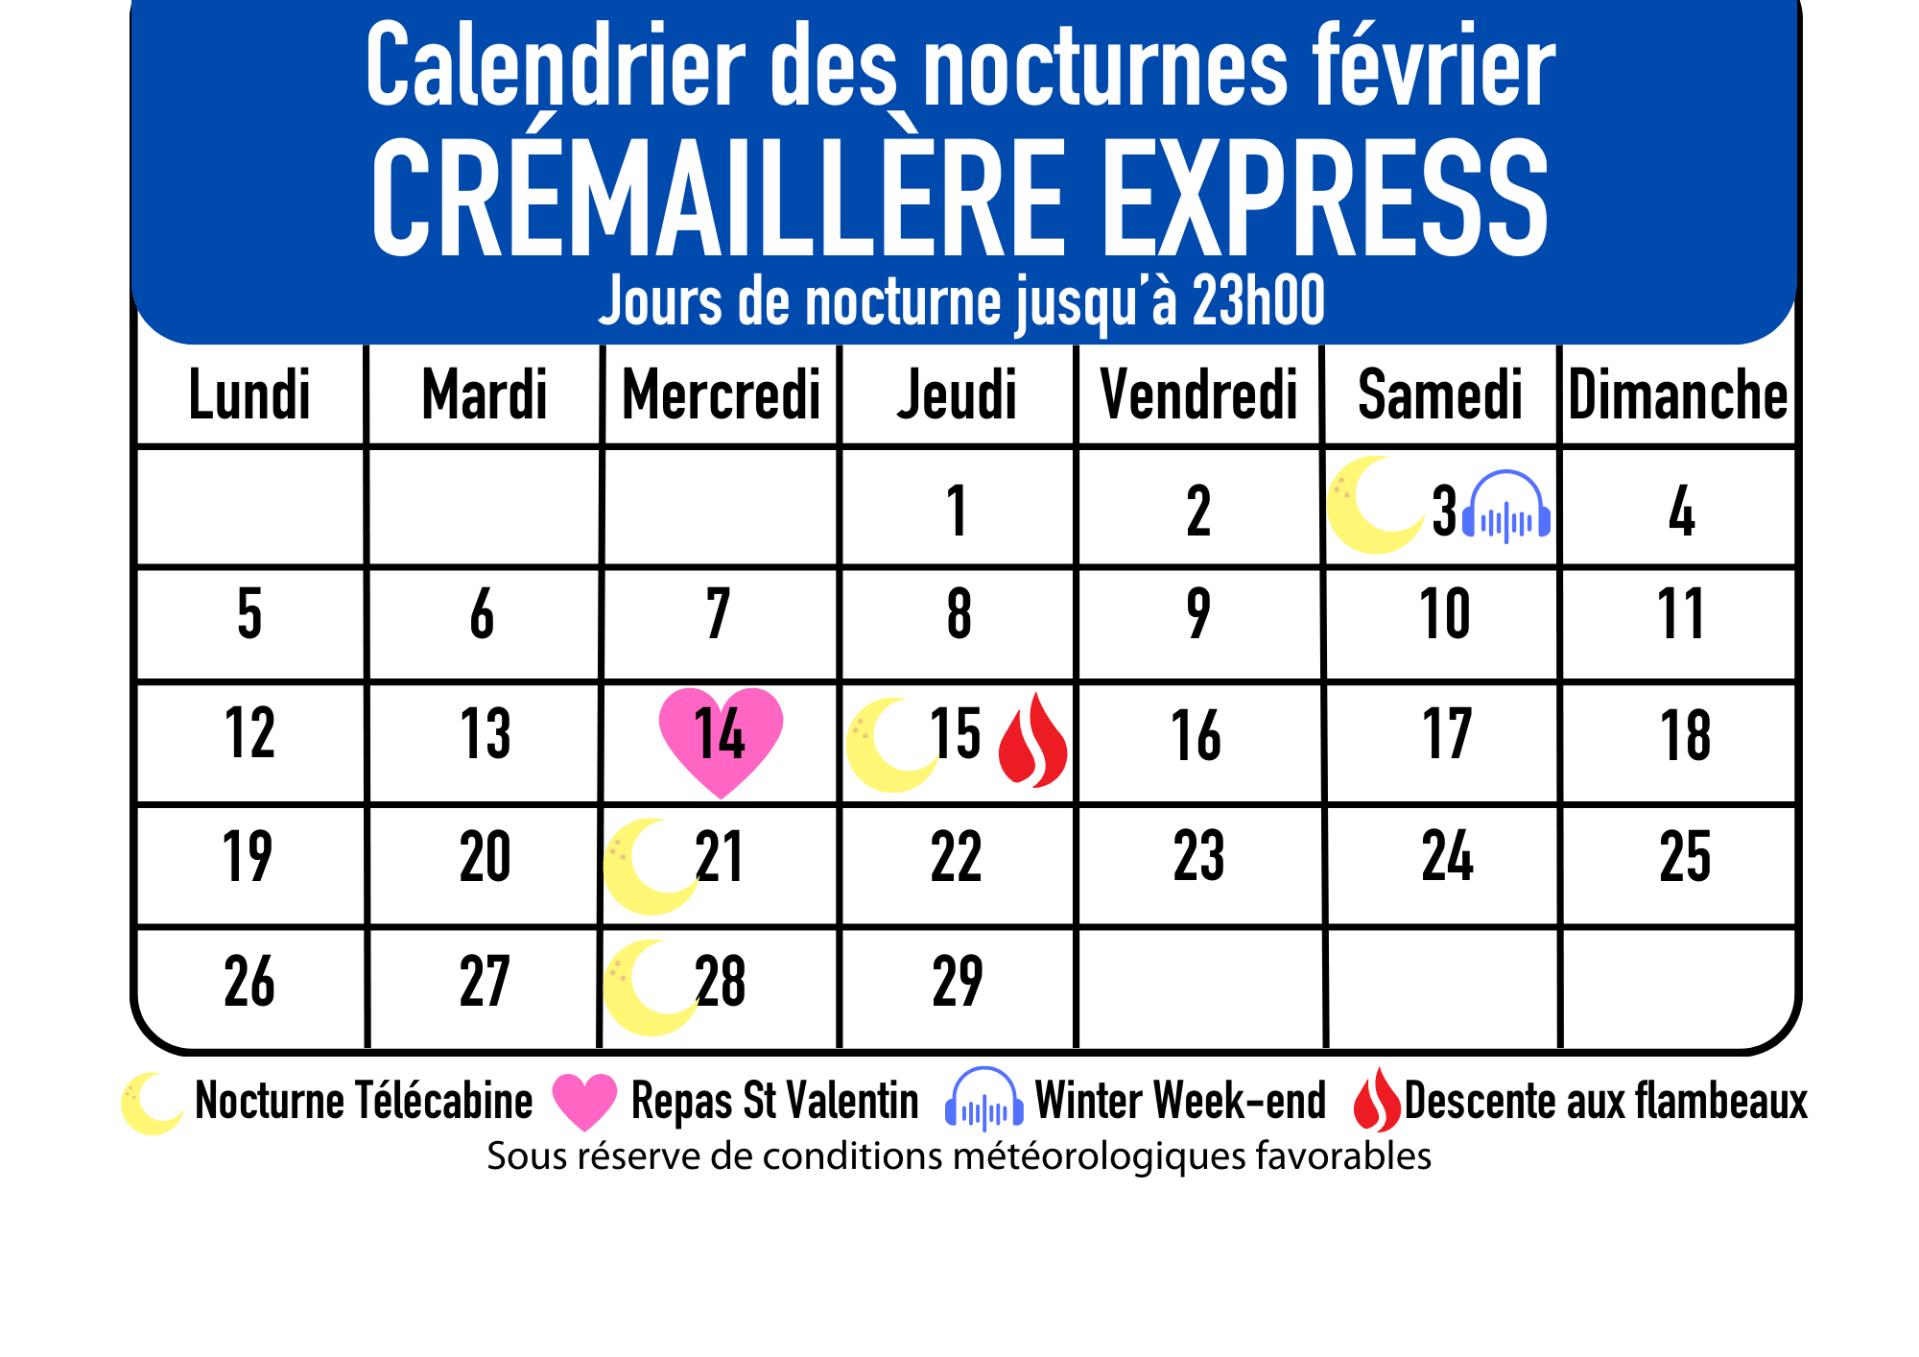 The Pyrenees mountains night calendar cogwheel cable car express